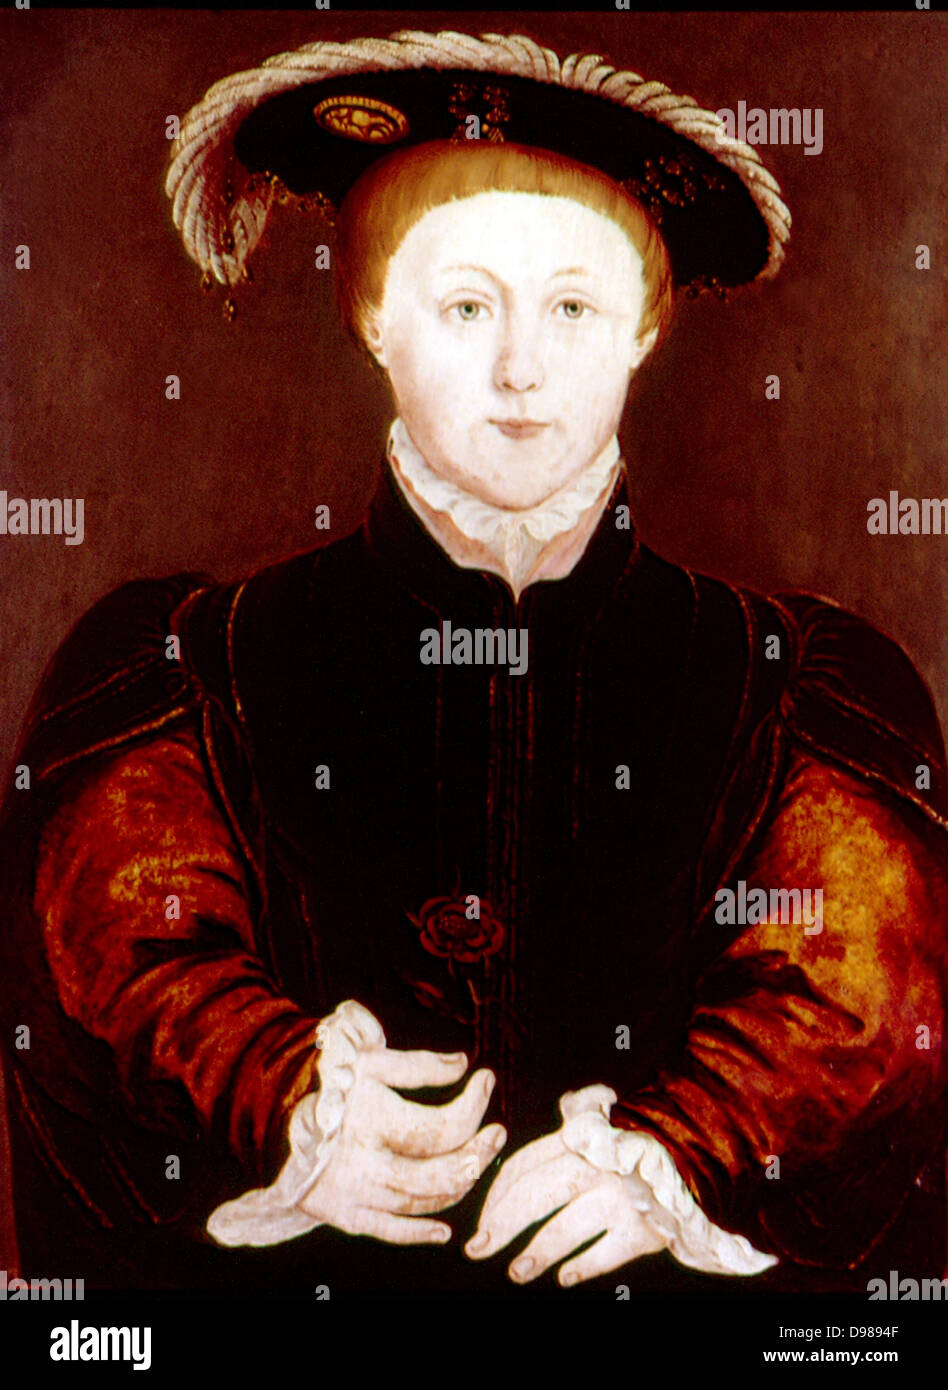 Eduard VI. (1537-1553) König von England und Irland von 1547. Sohn von Heinrich VIII. und seiner dritten Frau Jane Seymour. Immer ein kränkliches Kind, er starb eines natürlichen Todes. Anonymes Porträt Stockfoto